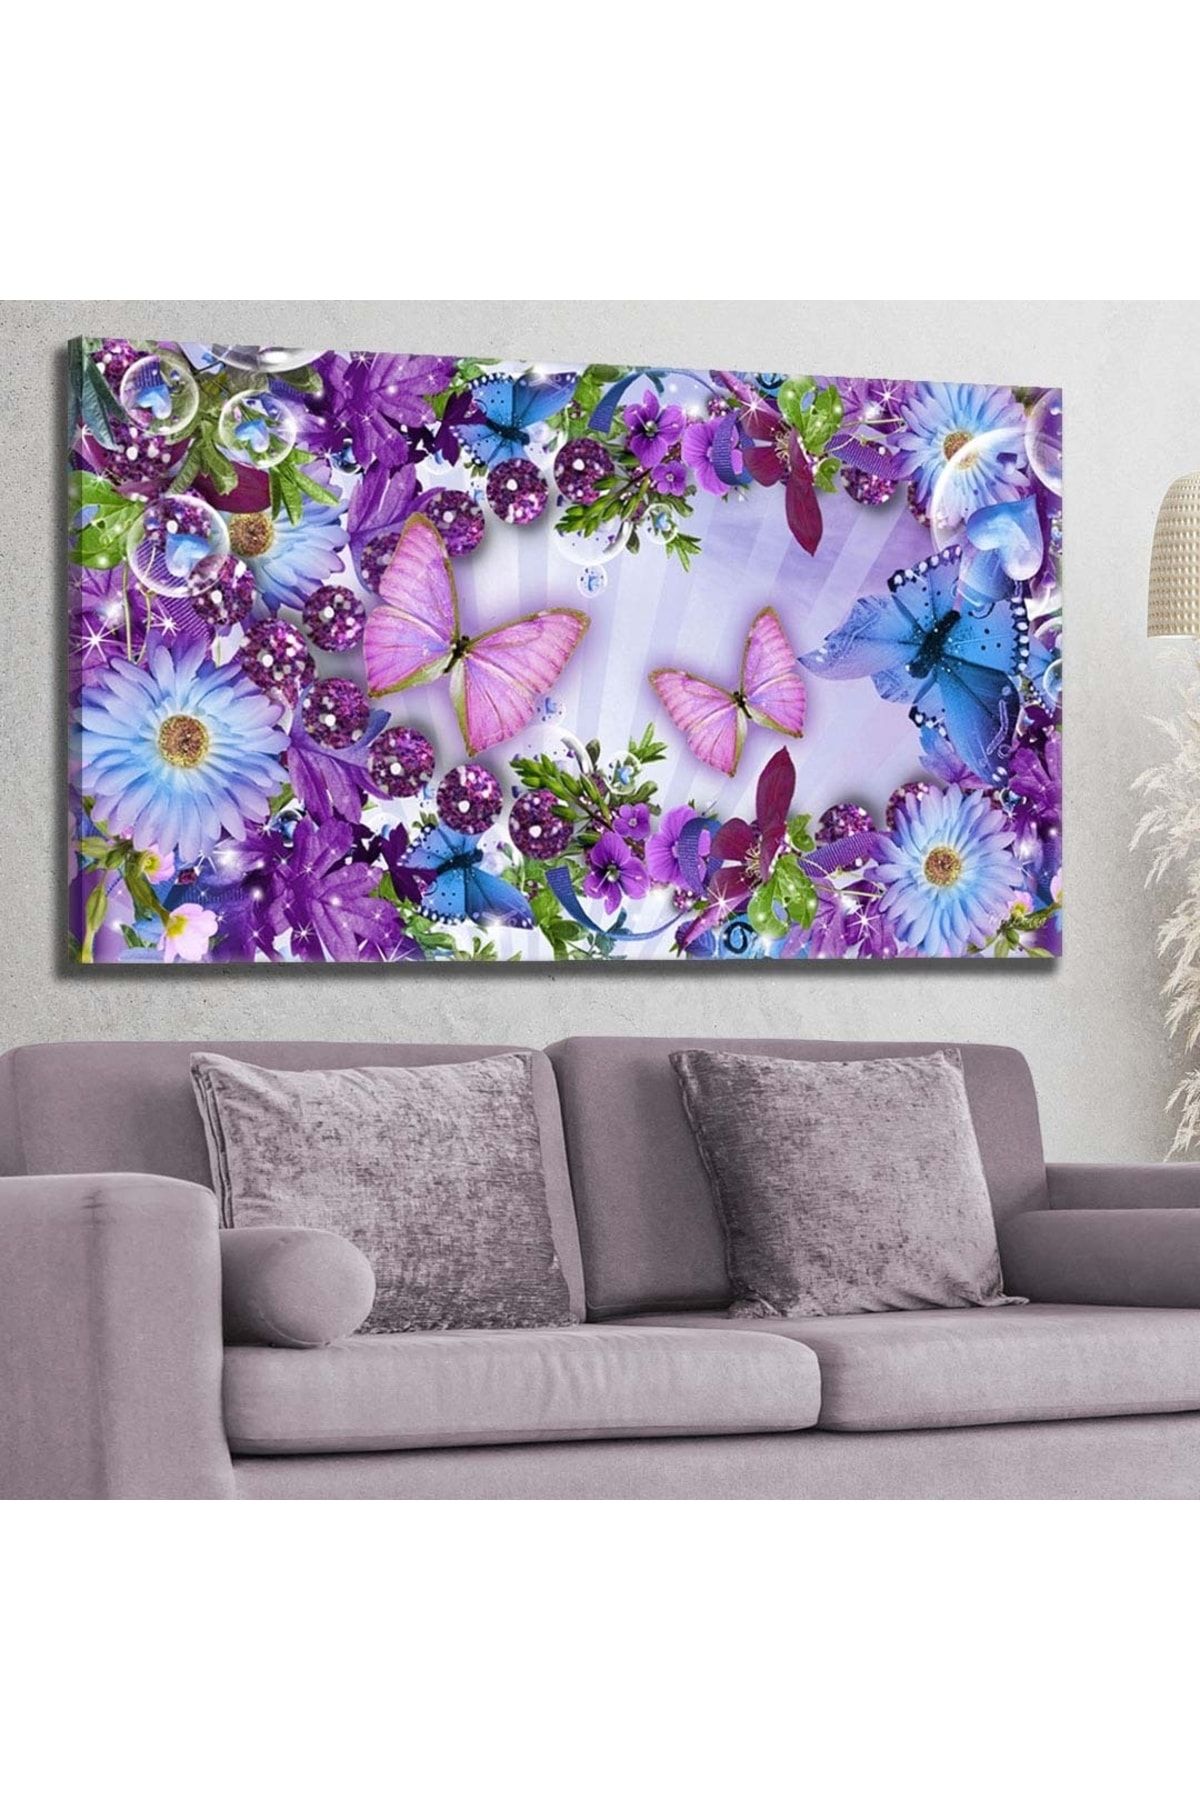 hanhomeart Işıltılı Mor Çiçekler-kelebekler - Kanvas Tablo 60x120cm-hykvs-521